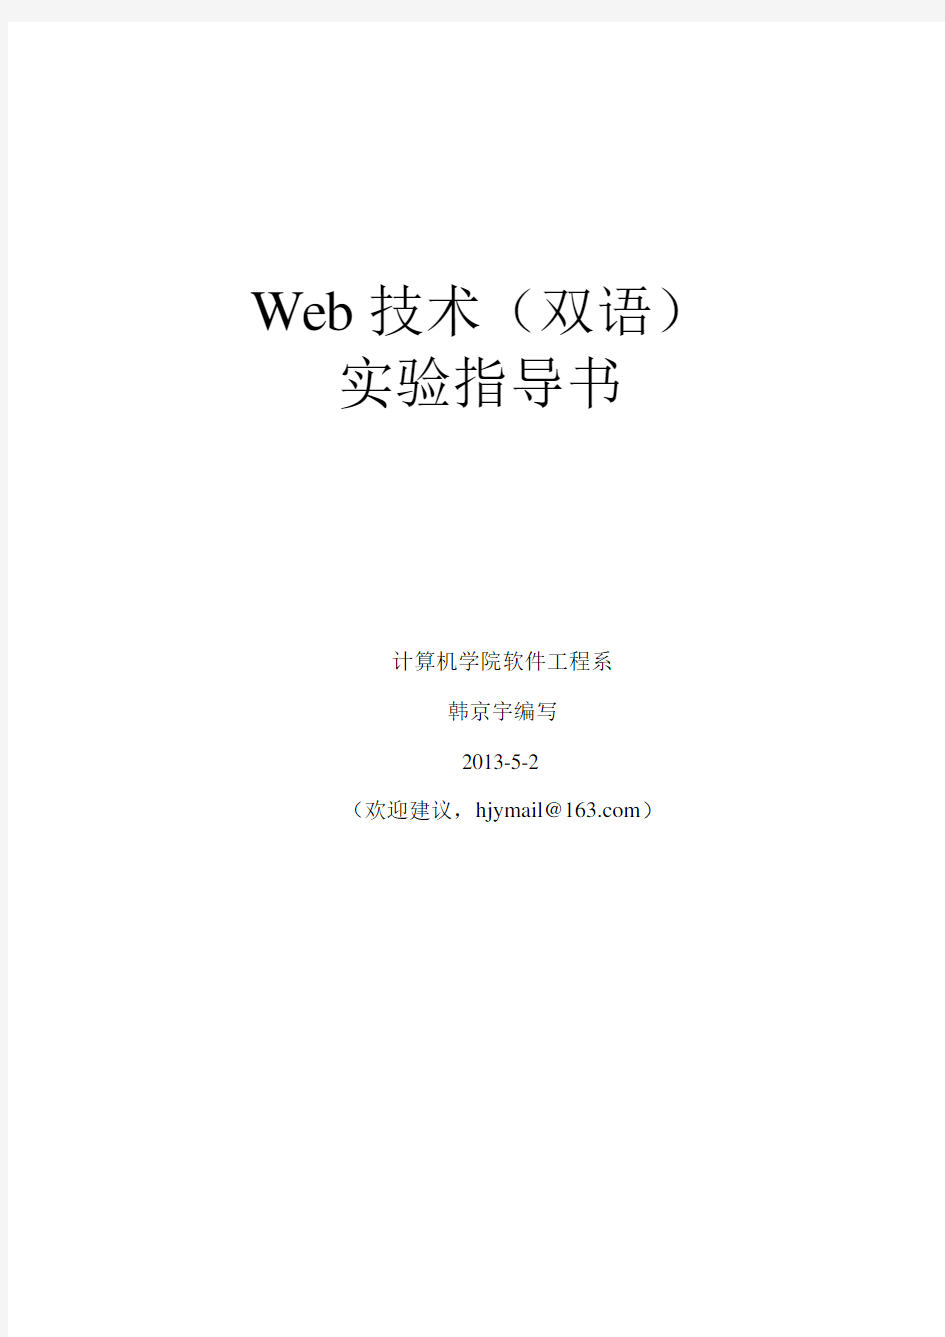 Web技术实验指导书